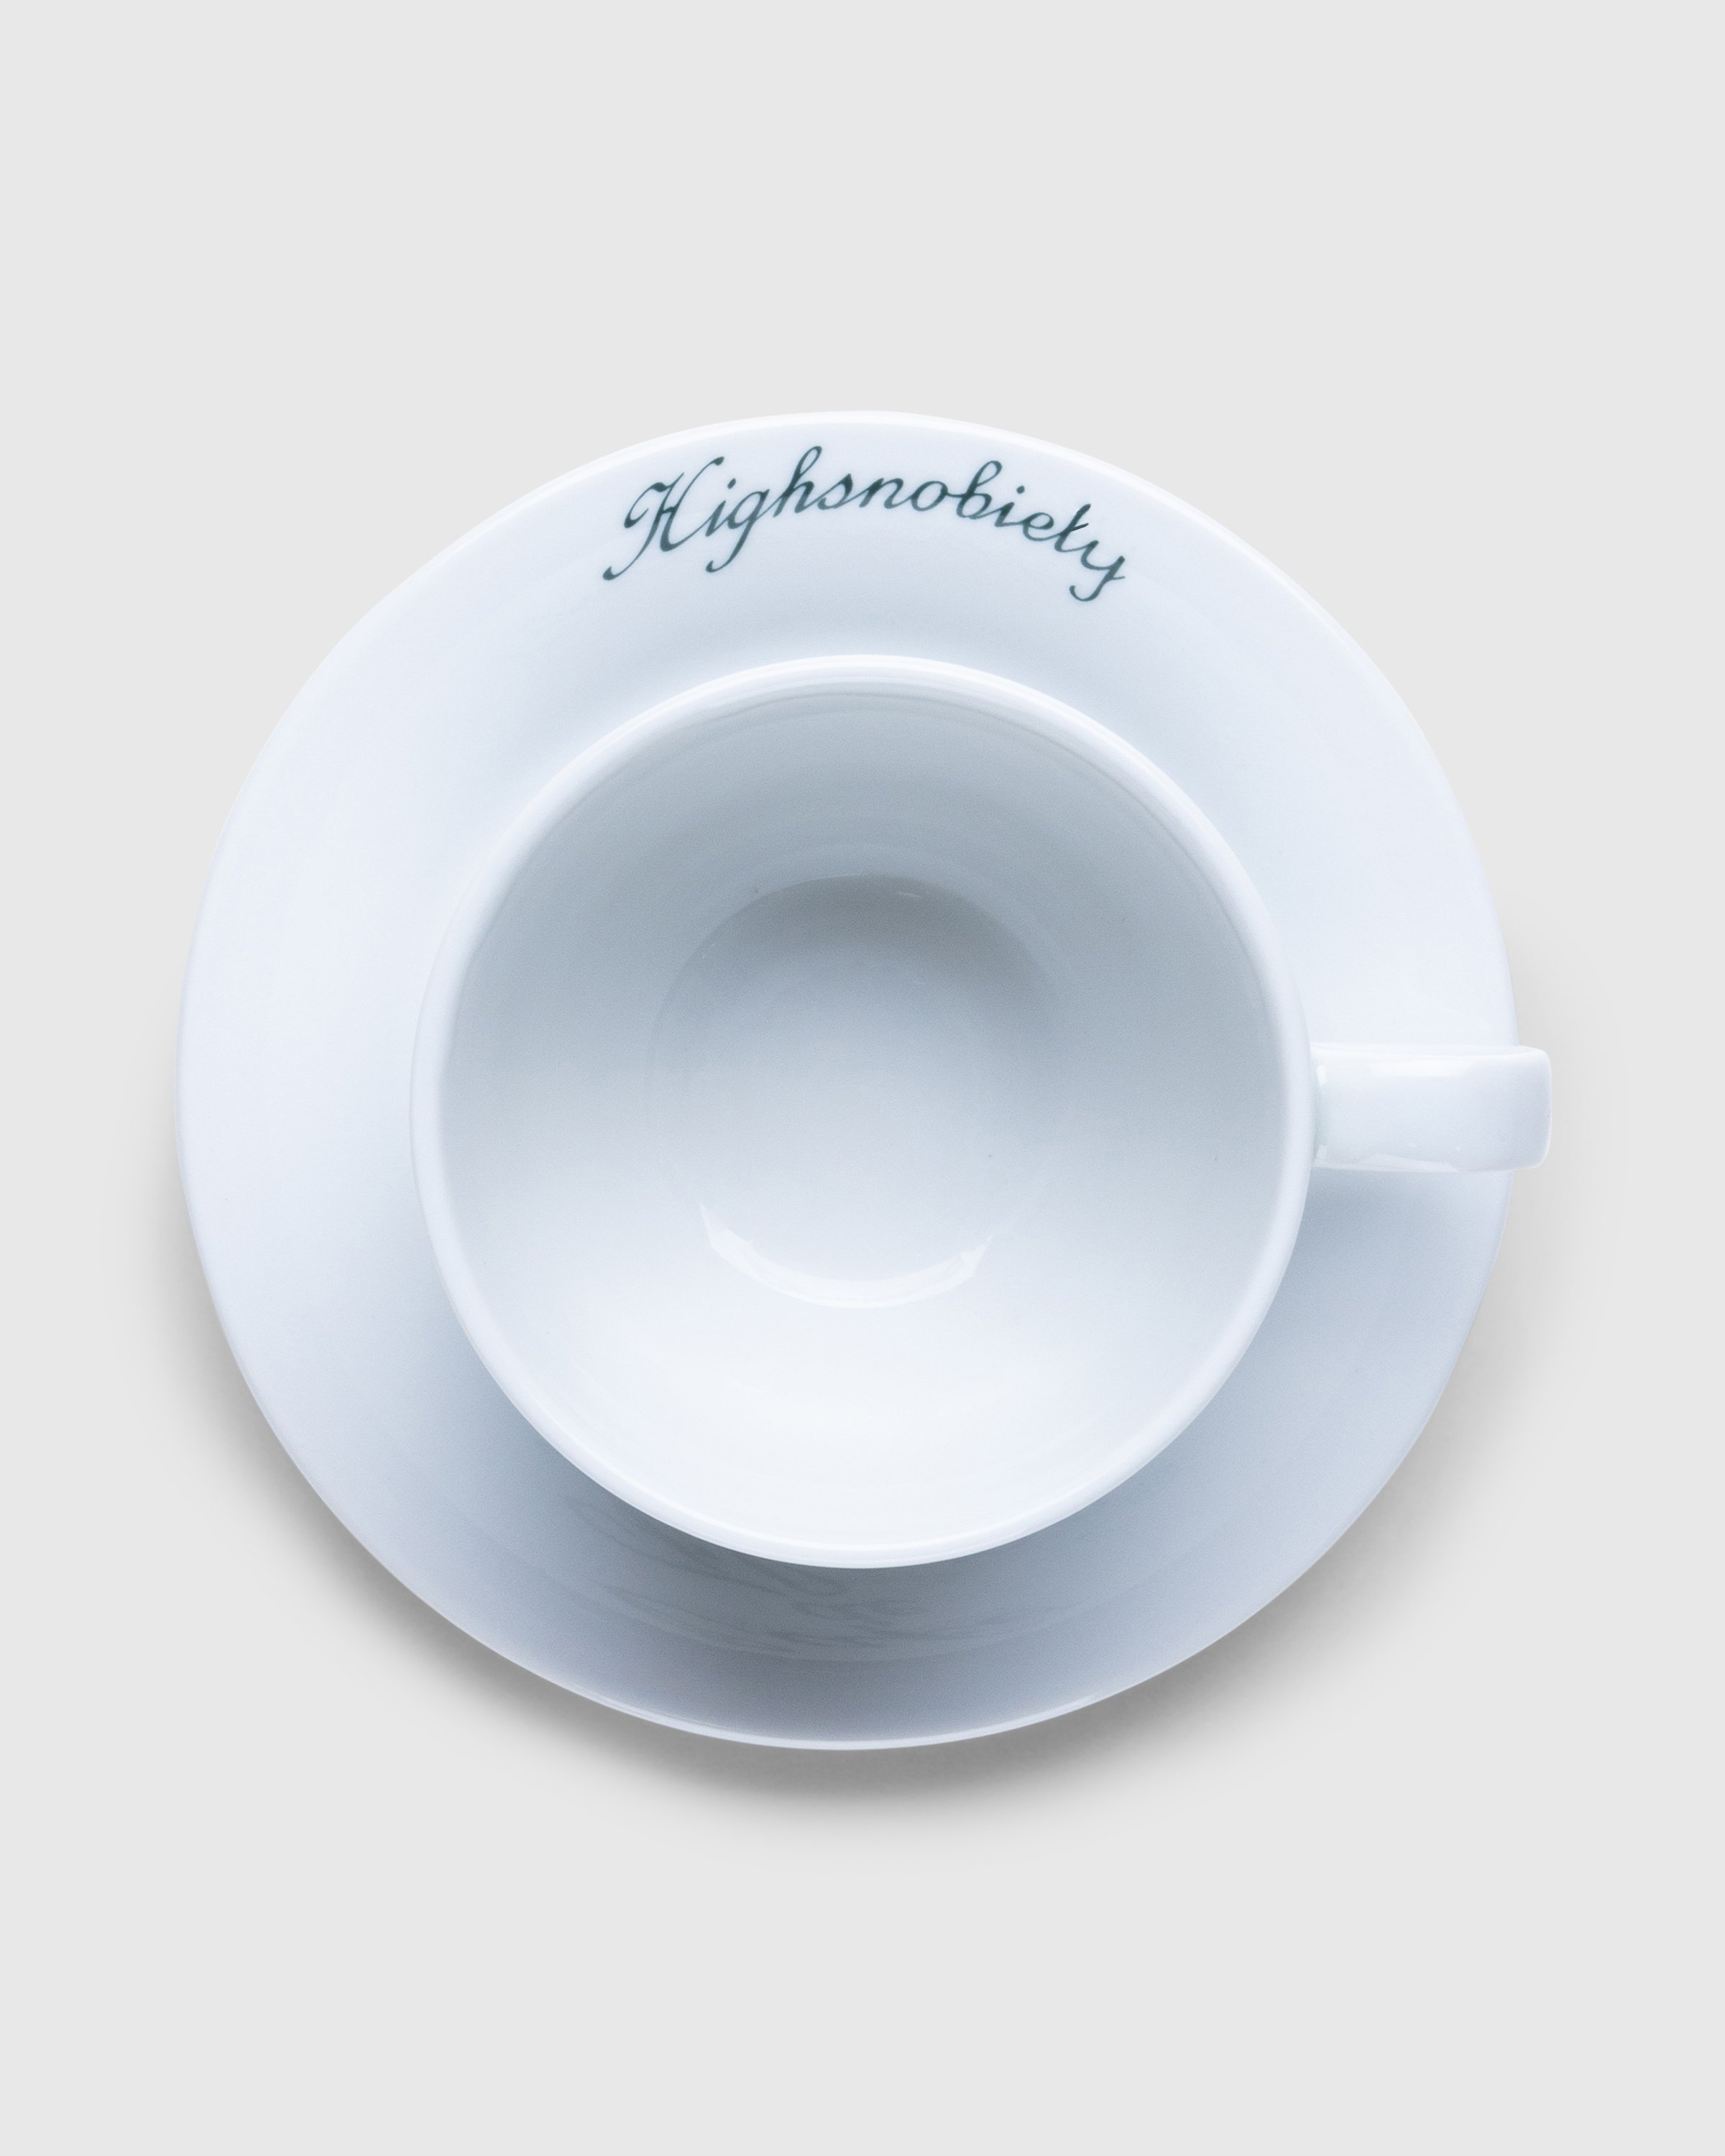 Café de Flore x Highsnobiety – Breakfast Cup and Saucer - Ceramics - White - Image 3